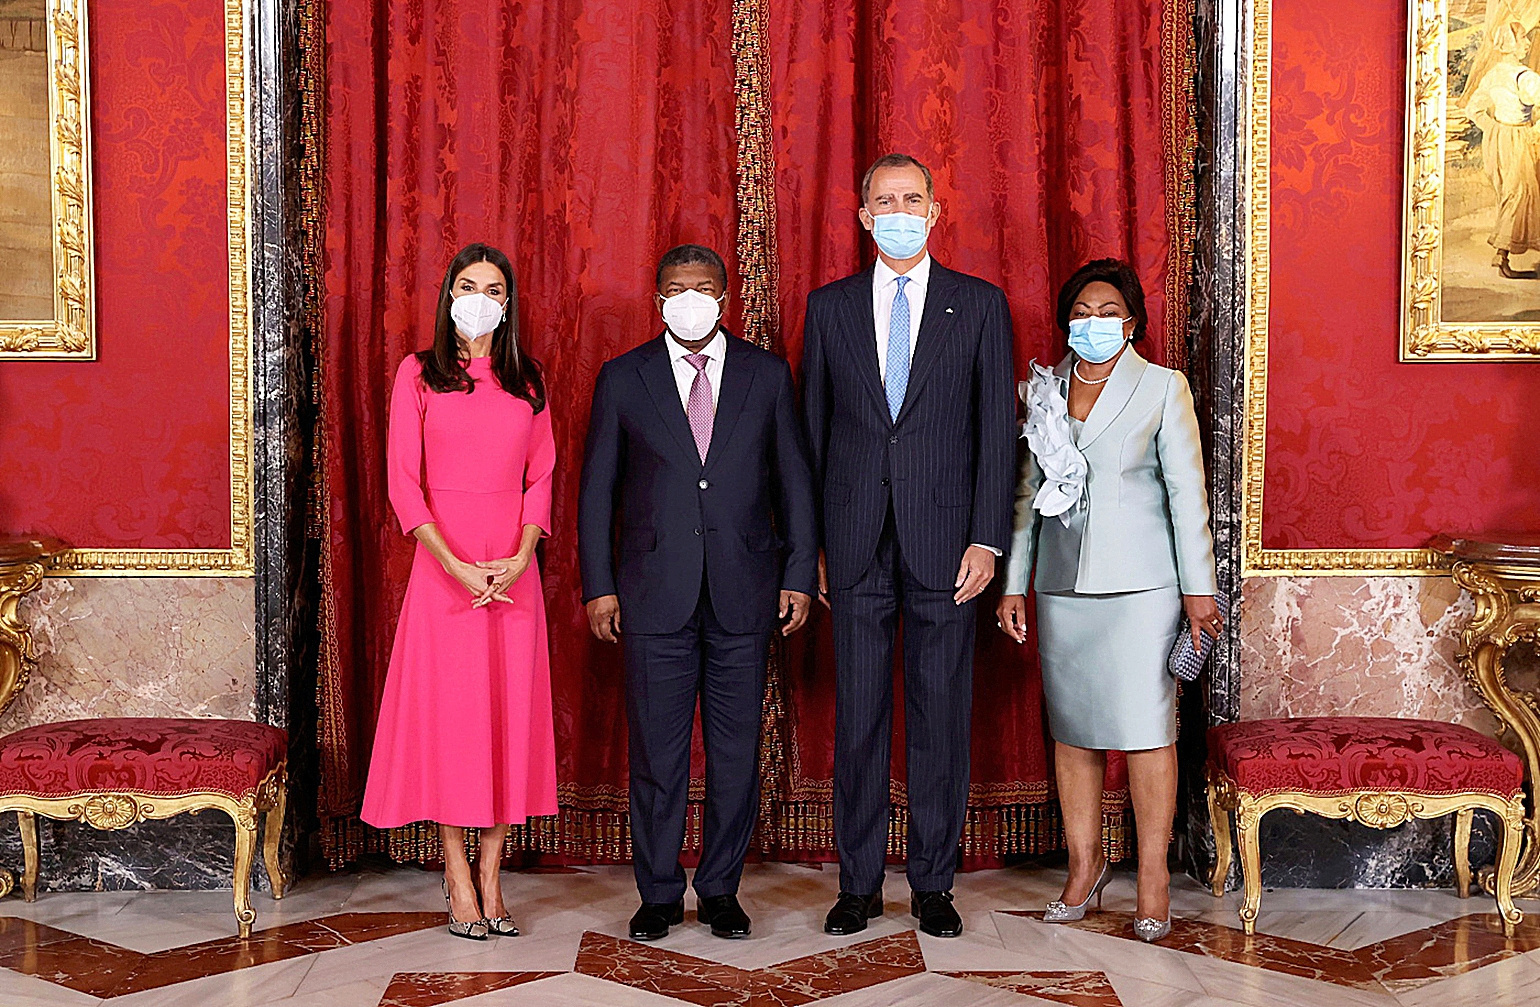 Los Reyes con el presidente de Angola y su esposa en septiembre de 2021 en el Palacio Real de Madrid.